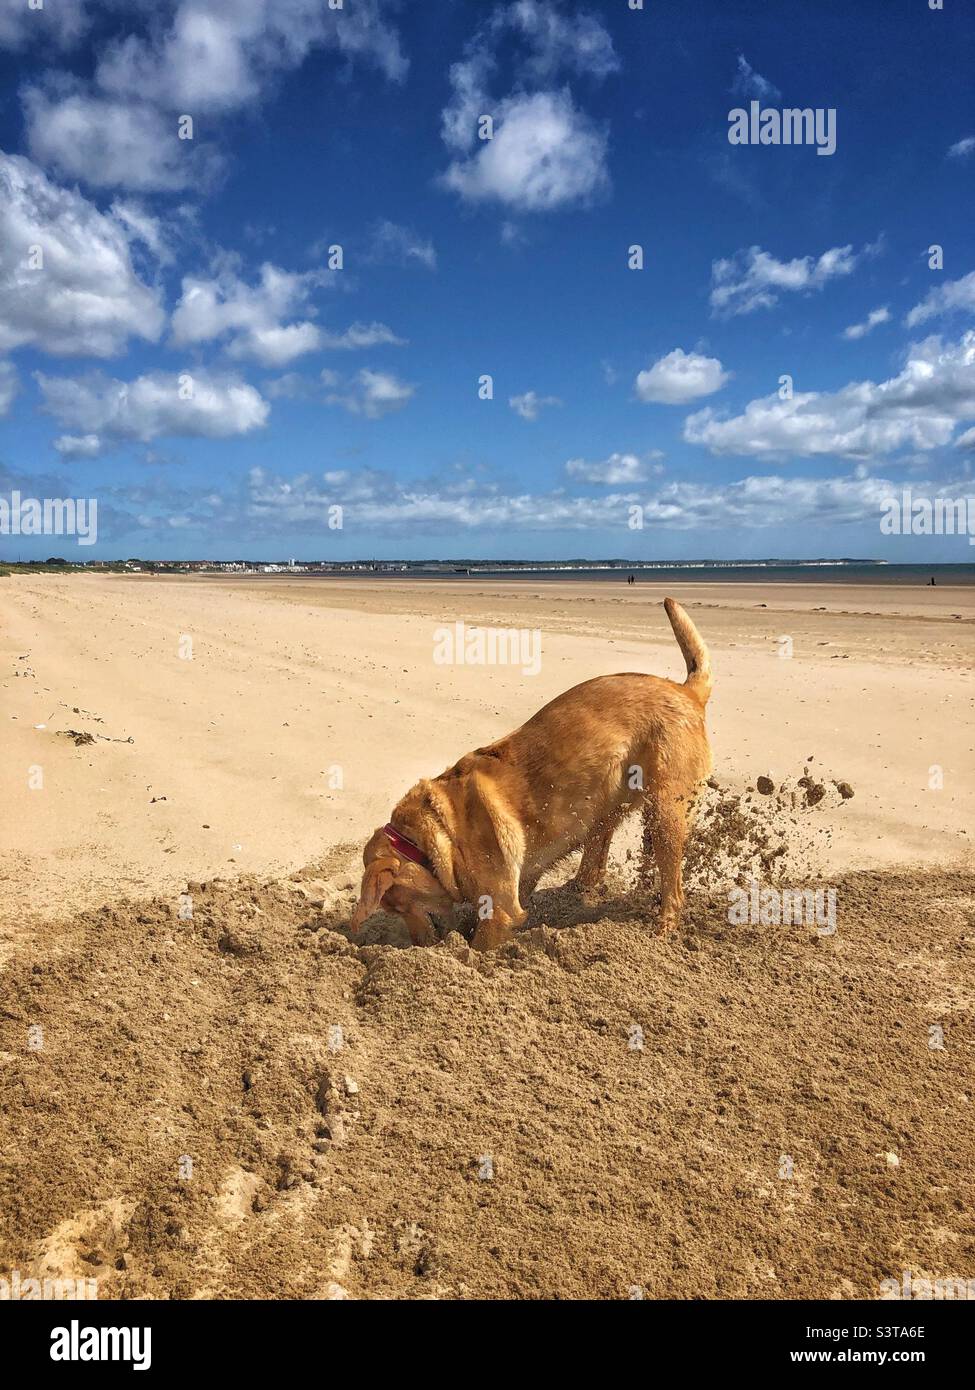 Ein Hund, der ein tiefes Loch an einem einsamen Sandstrand gräbt, während er im Sommer an einem heißen und sonnigen Tag Urlaub macht Stockfoto